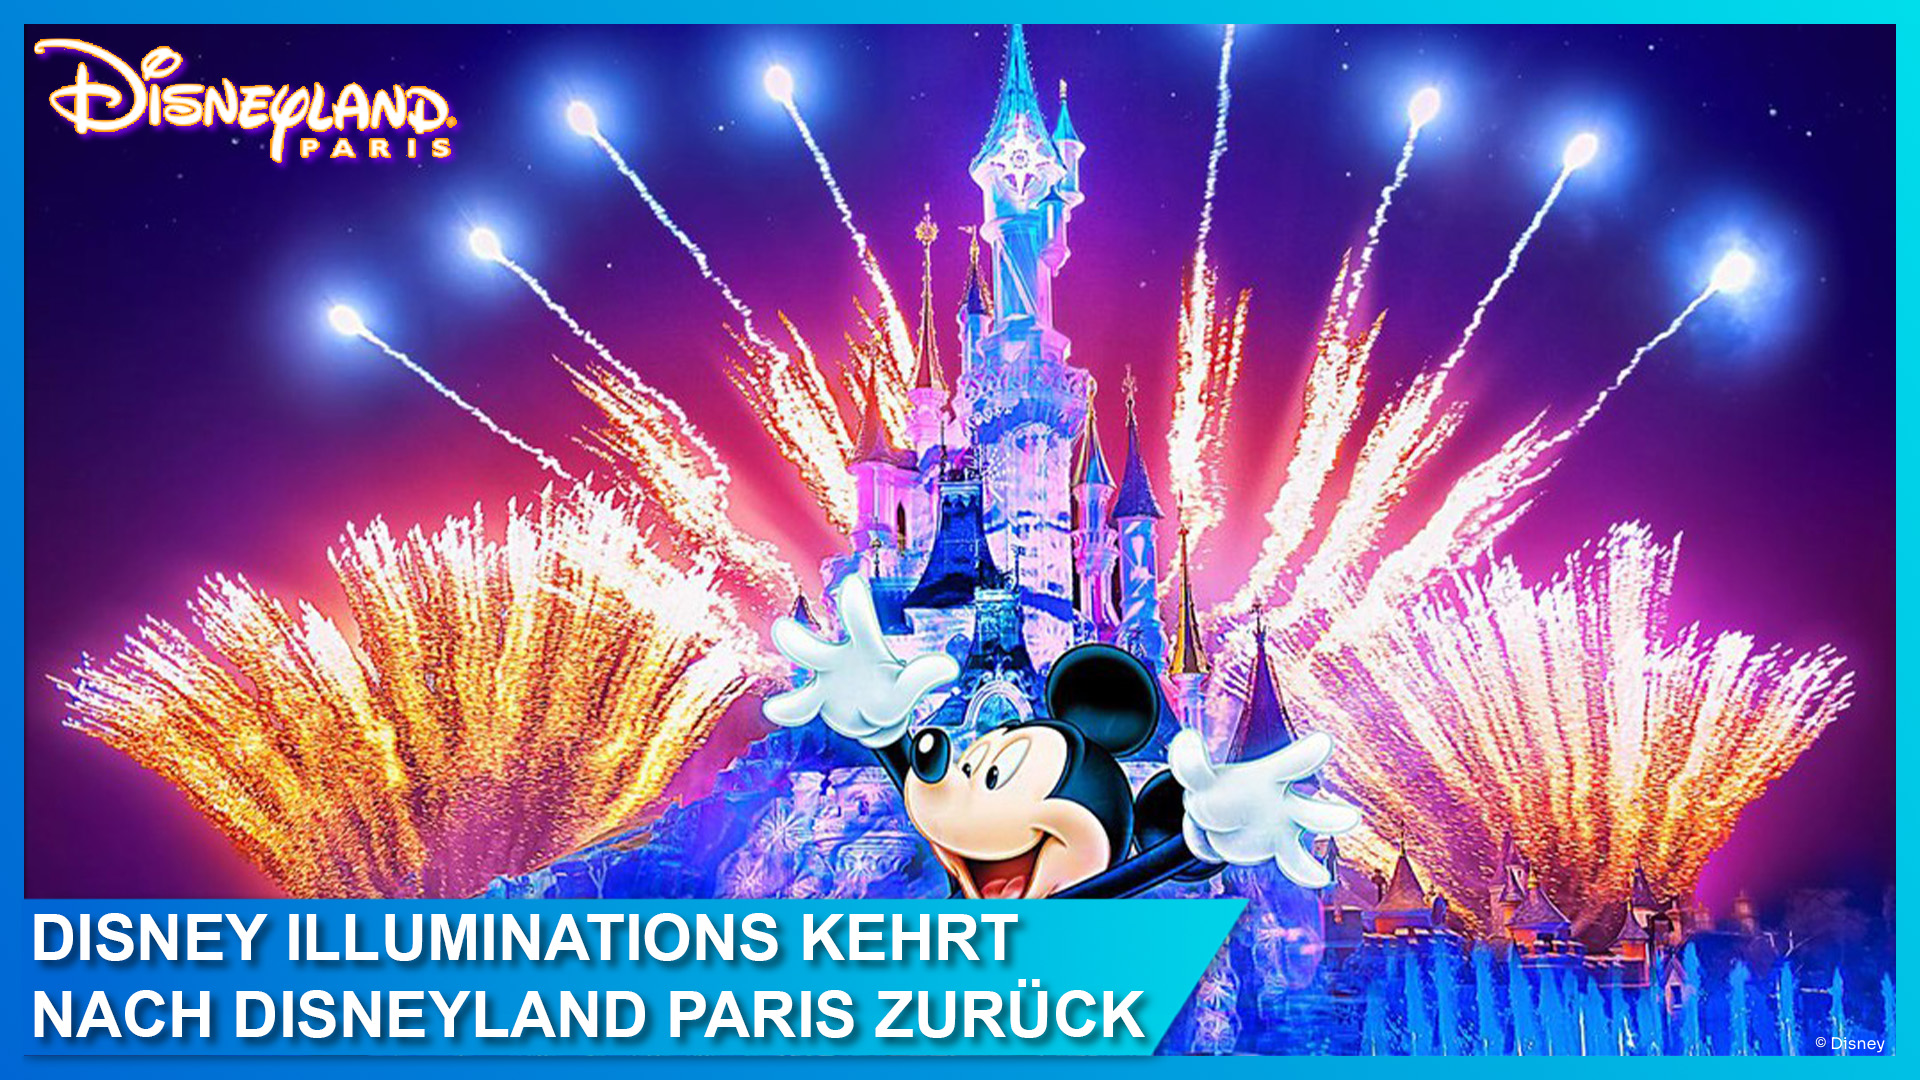 Ab 31. Mai: Disney Illuminations kehrt zurück nach Disneyland Paris – Feuerwerksshow Disney Dreams! wird beendet